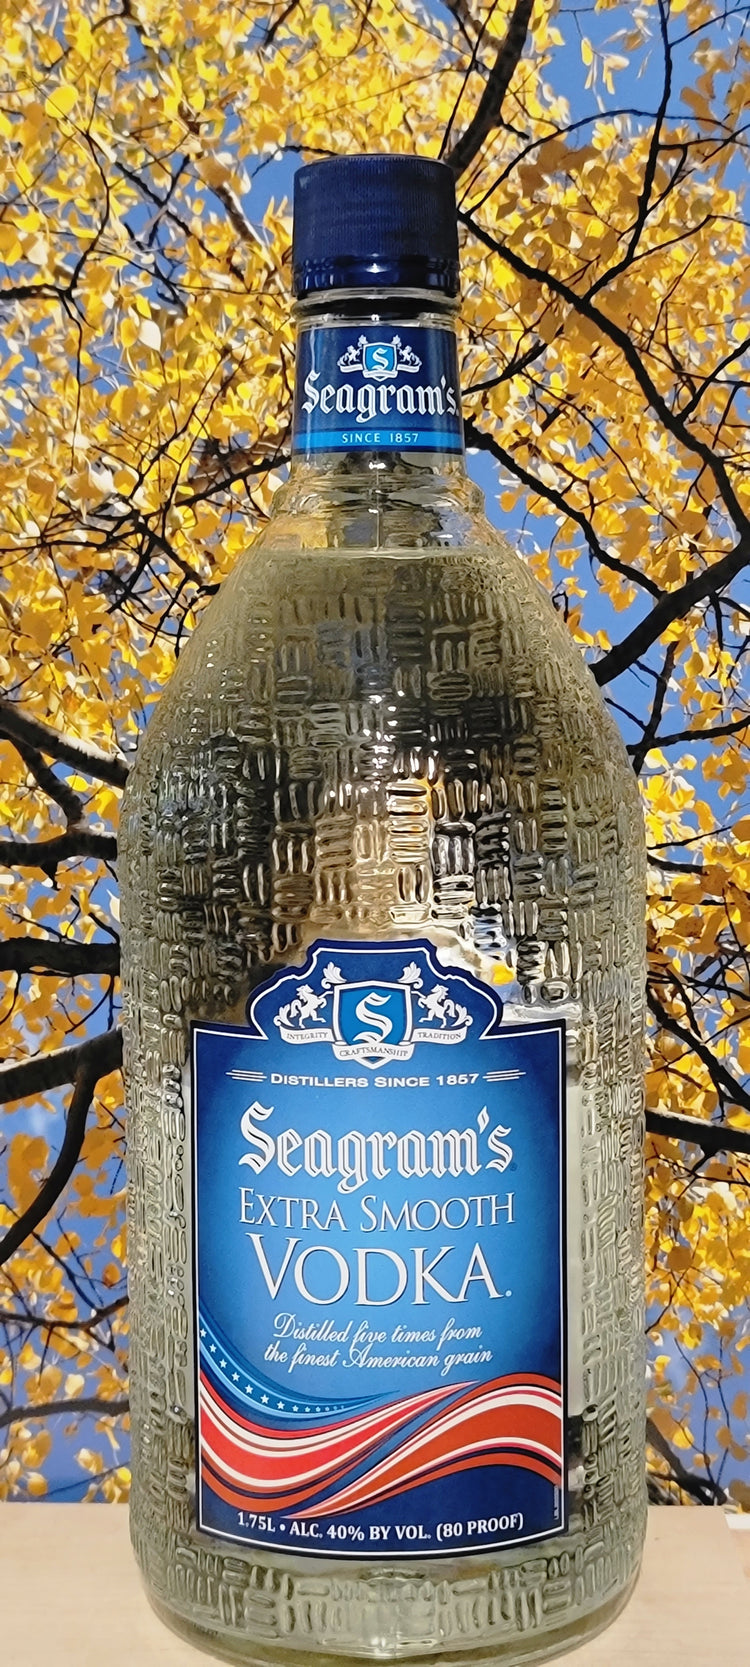 Seagrams ex smooth vodka